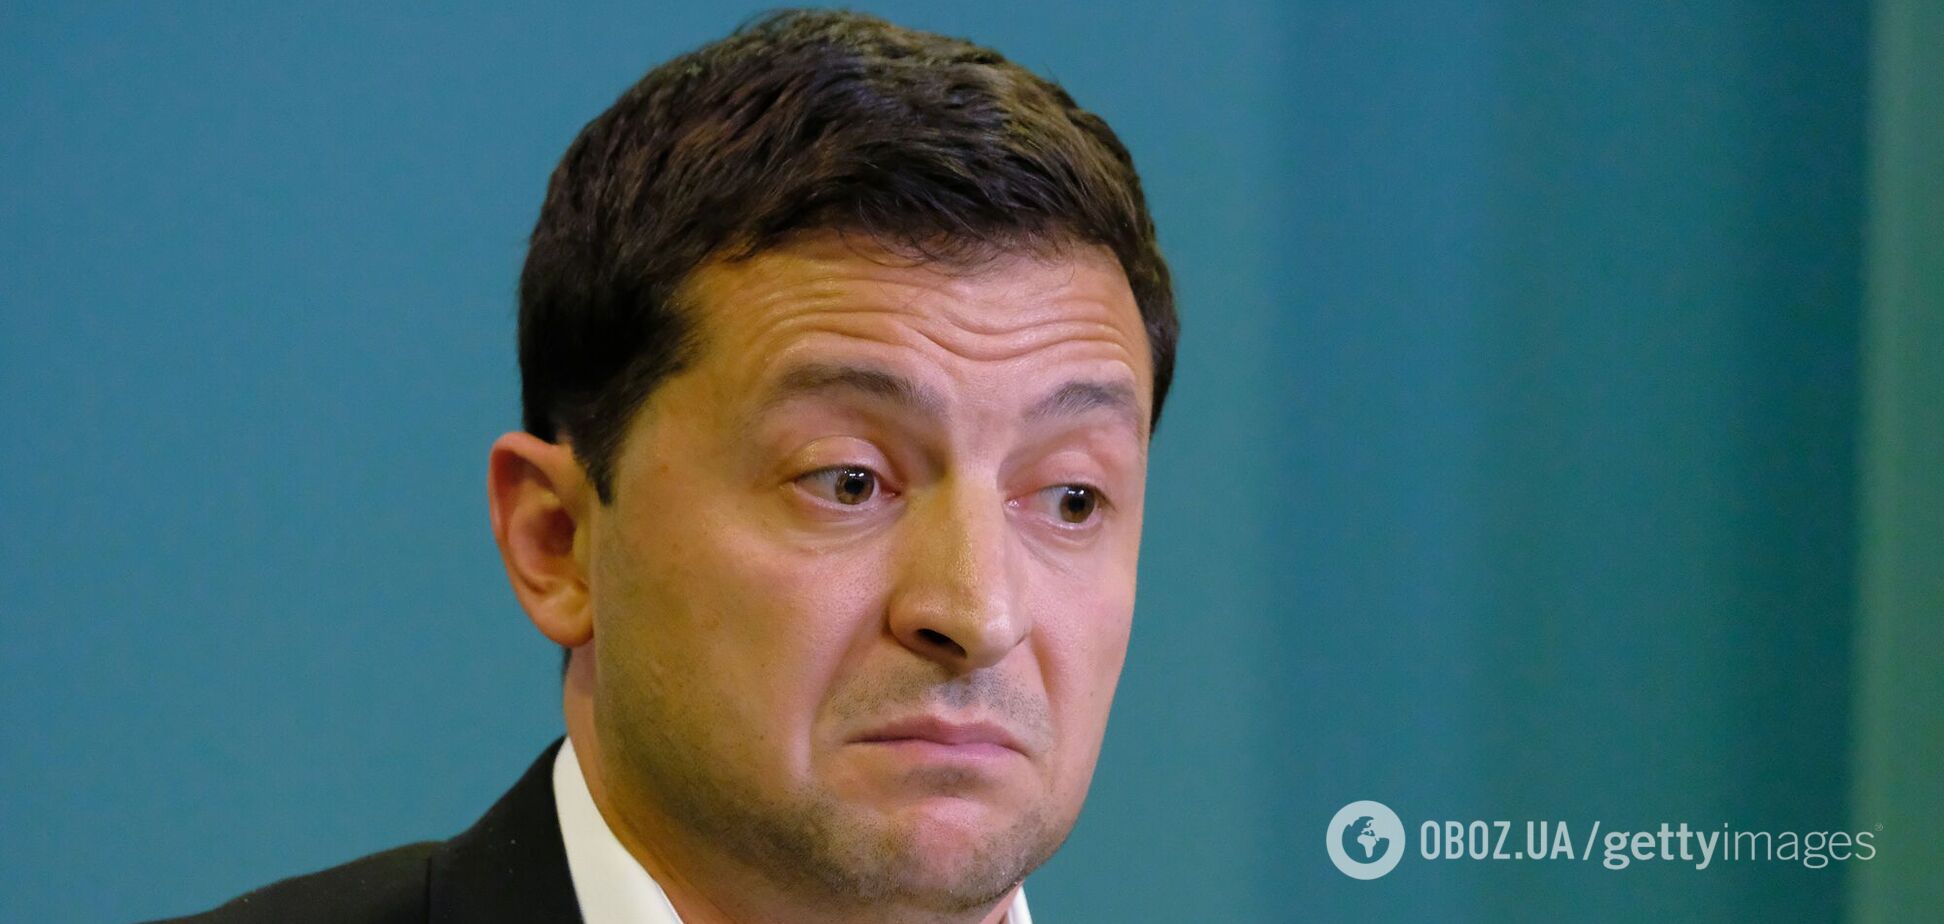 Половина украинцев поддержала отставку Зеленского и досрочные выборы. Опрос